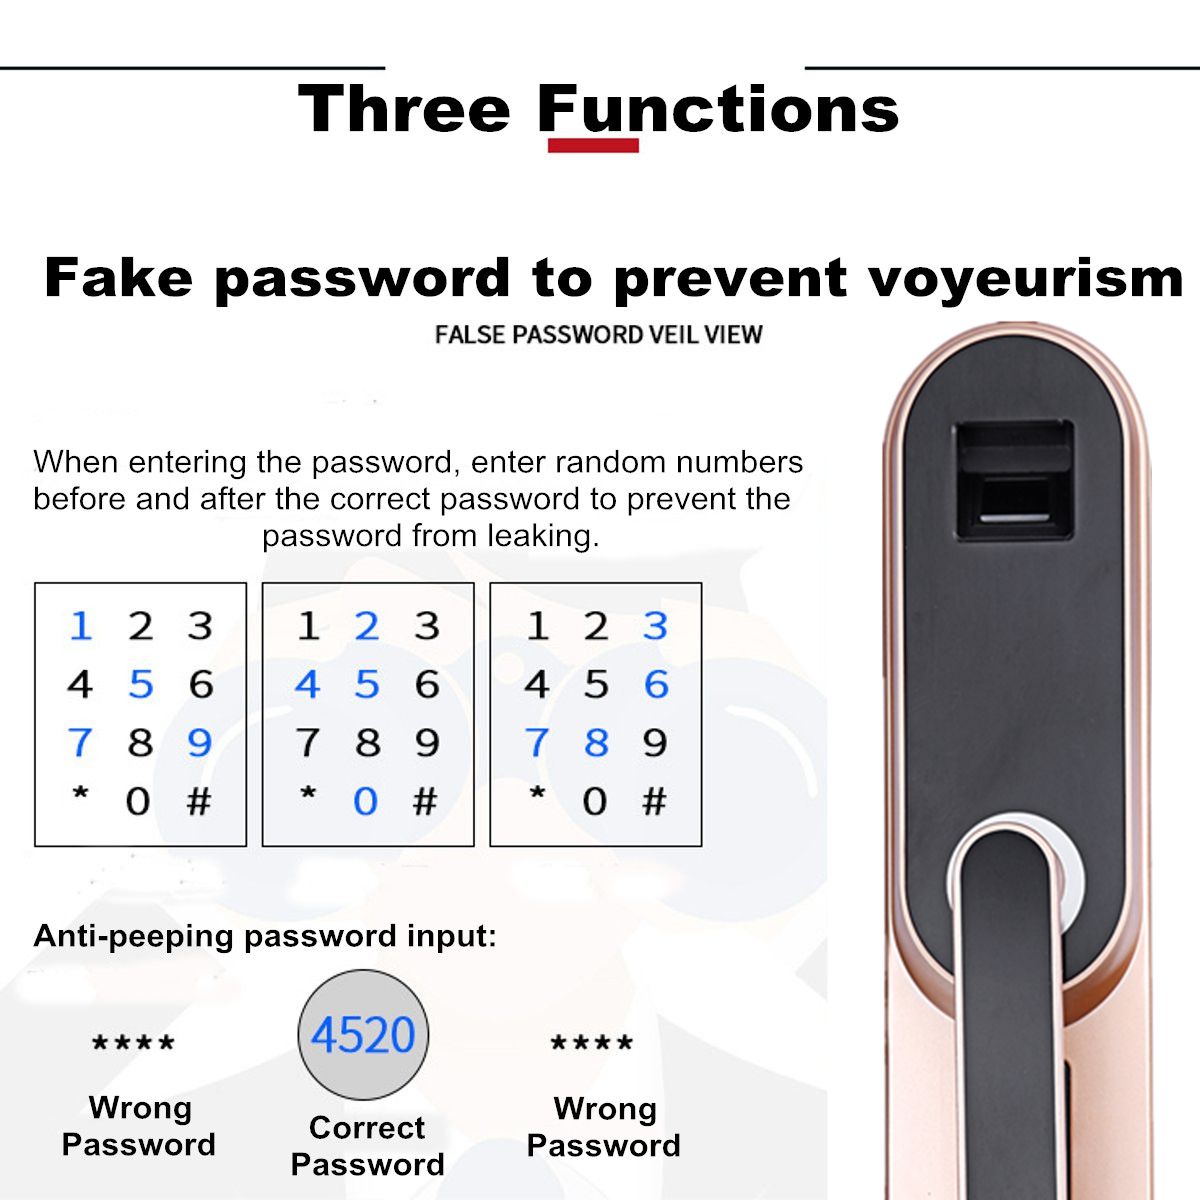 Universal-Digital-Smart-Door-Lock-Password-Fingerprint-Anti-theft-Security-1288192